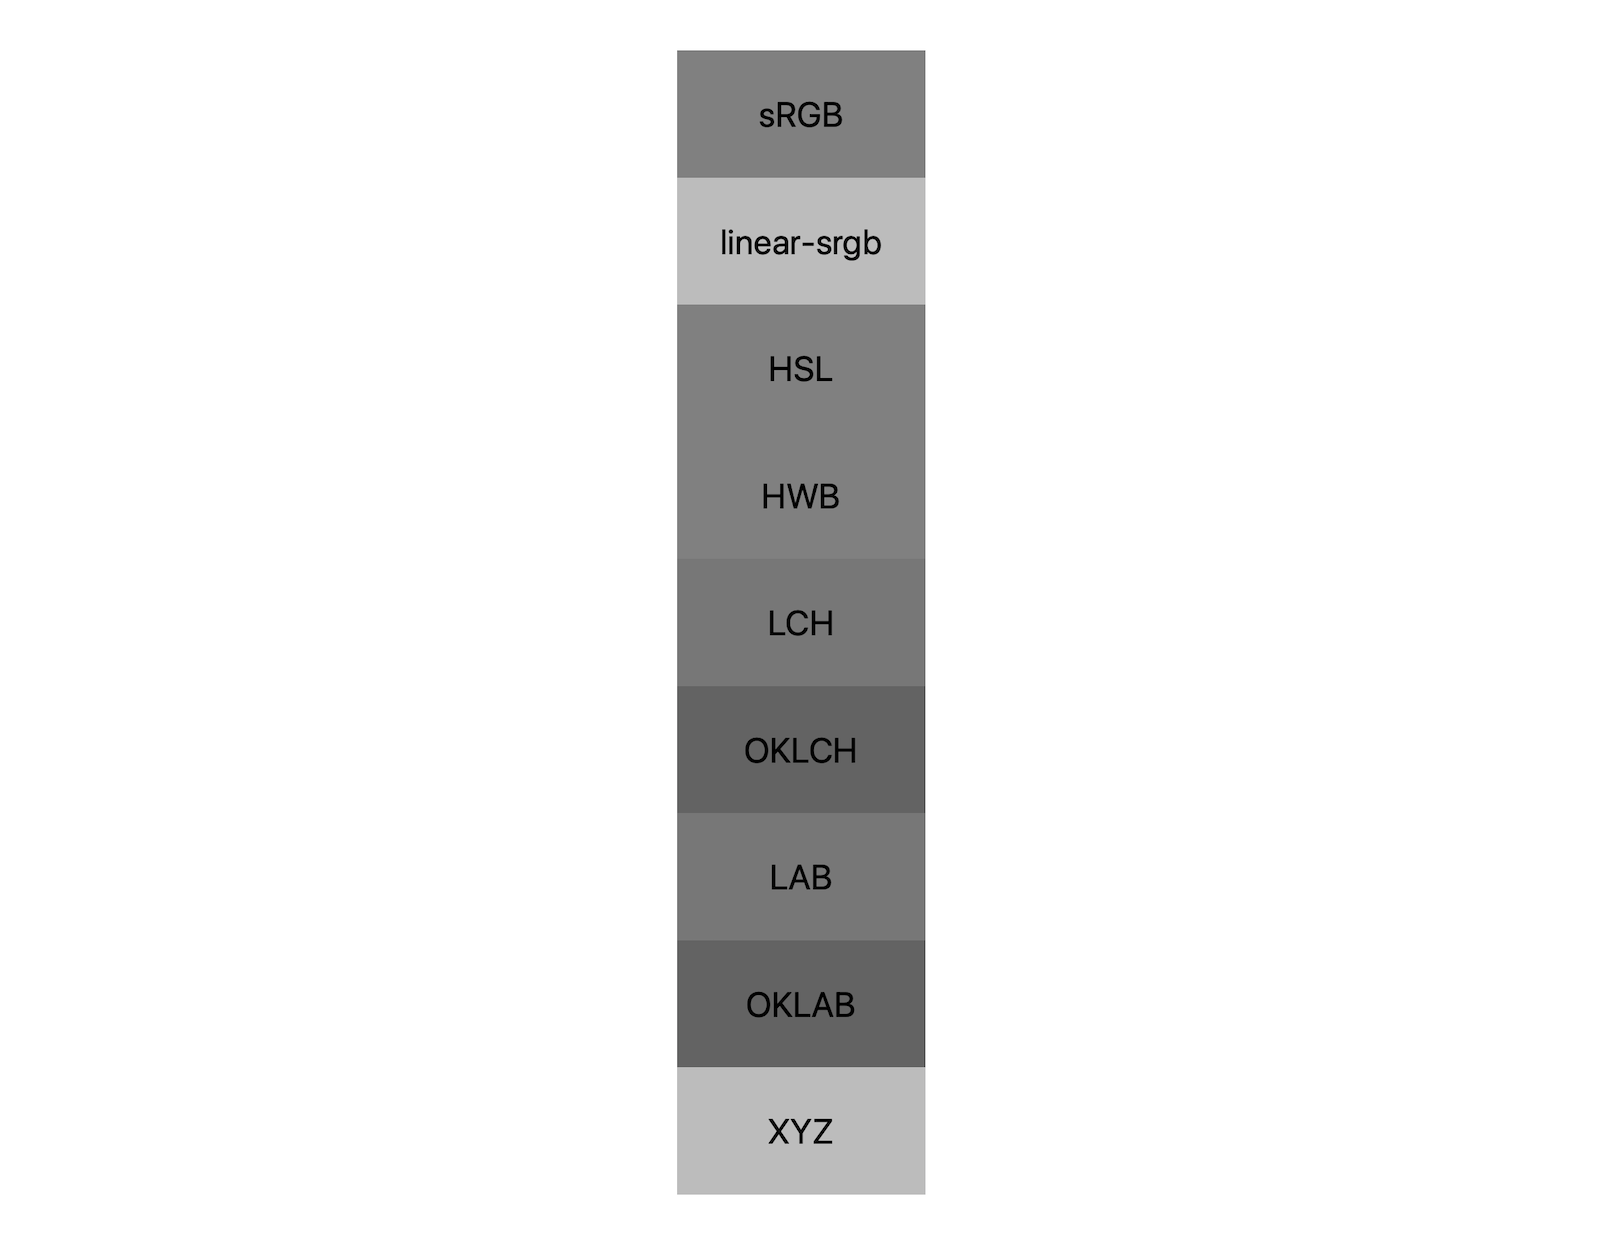 7 không gian màu (srgb, tuyến tính-srgb, lch, oklch, phòng thí nghiệm, oklab, xyz) mỗi hệ thống cho thấy kết quả kết hợp đen trắng. Khoảng 5 sắc độ khác nhau được hiển thị, chứng minh rằng mỗi hệ màu thậm chí sẽ có màu xám khác nhau.